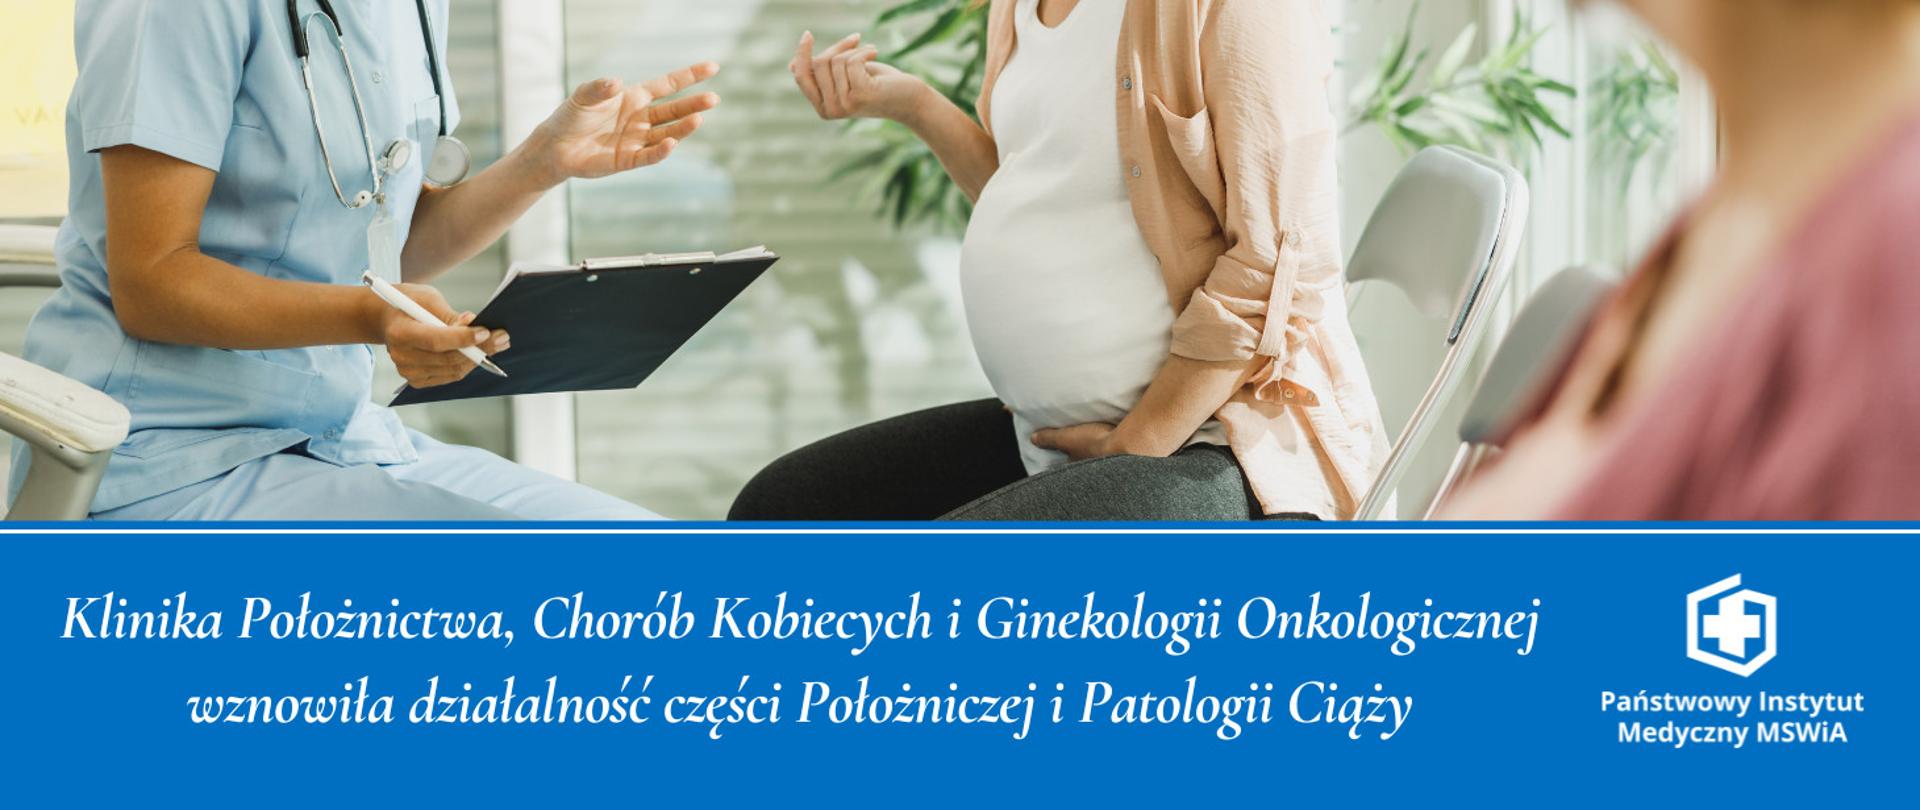 Klinika Położnictwa, Chorób Kobiecych i Ginekologii Onkologicznej wznowiła działalność części Położniczej i Patologii Ciąży